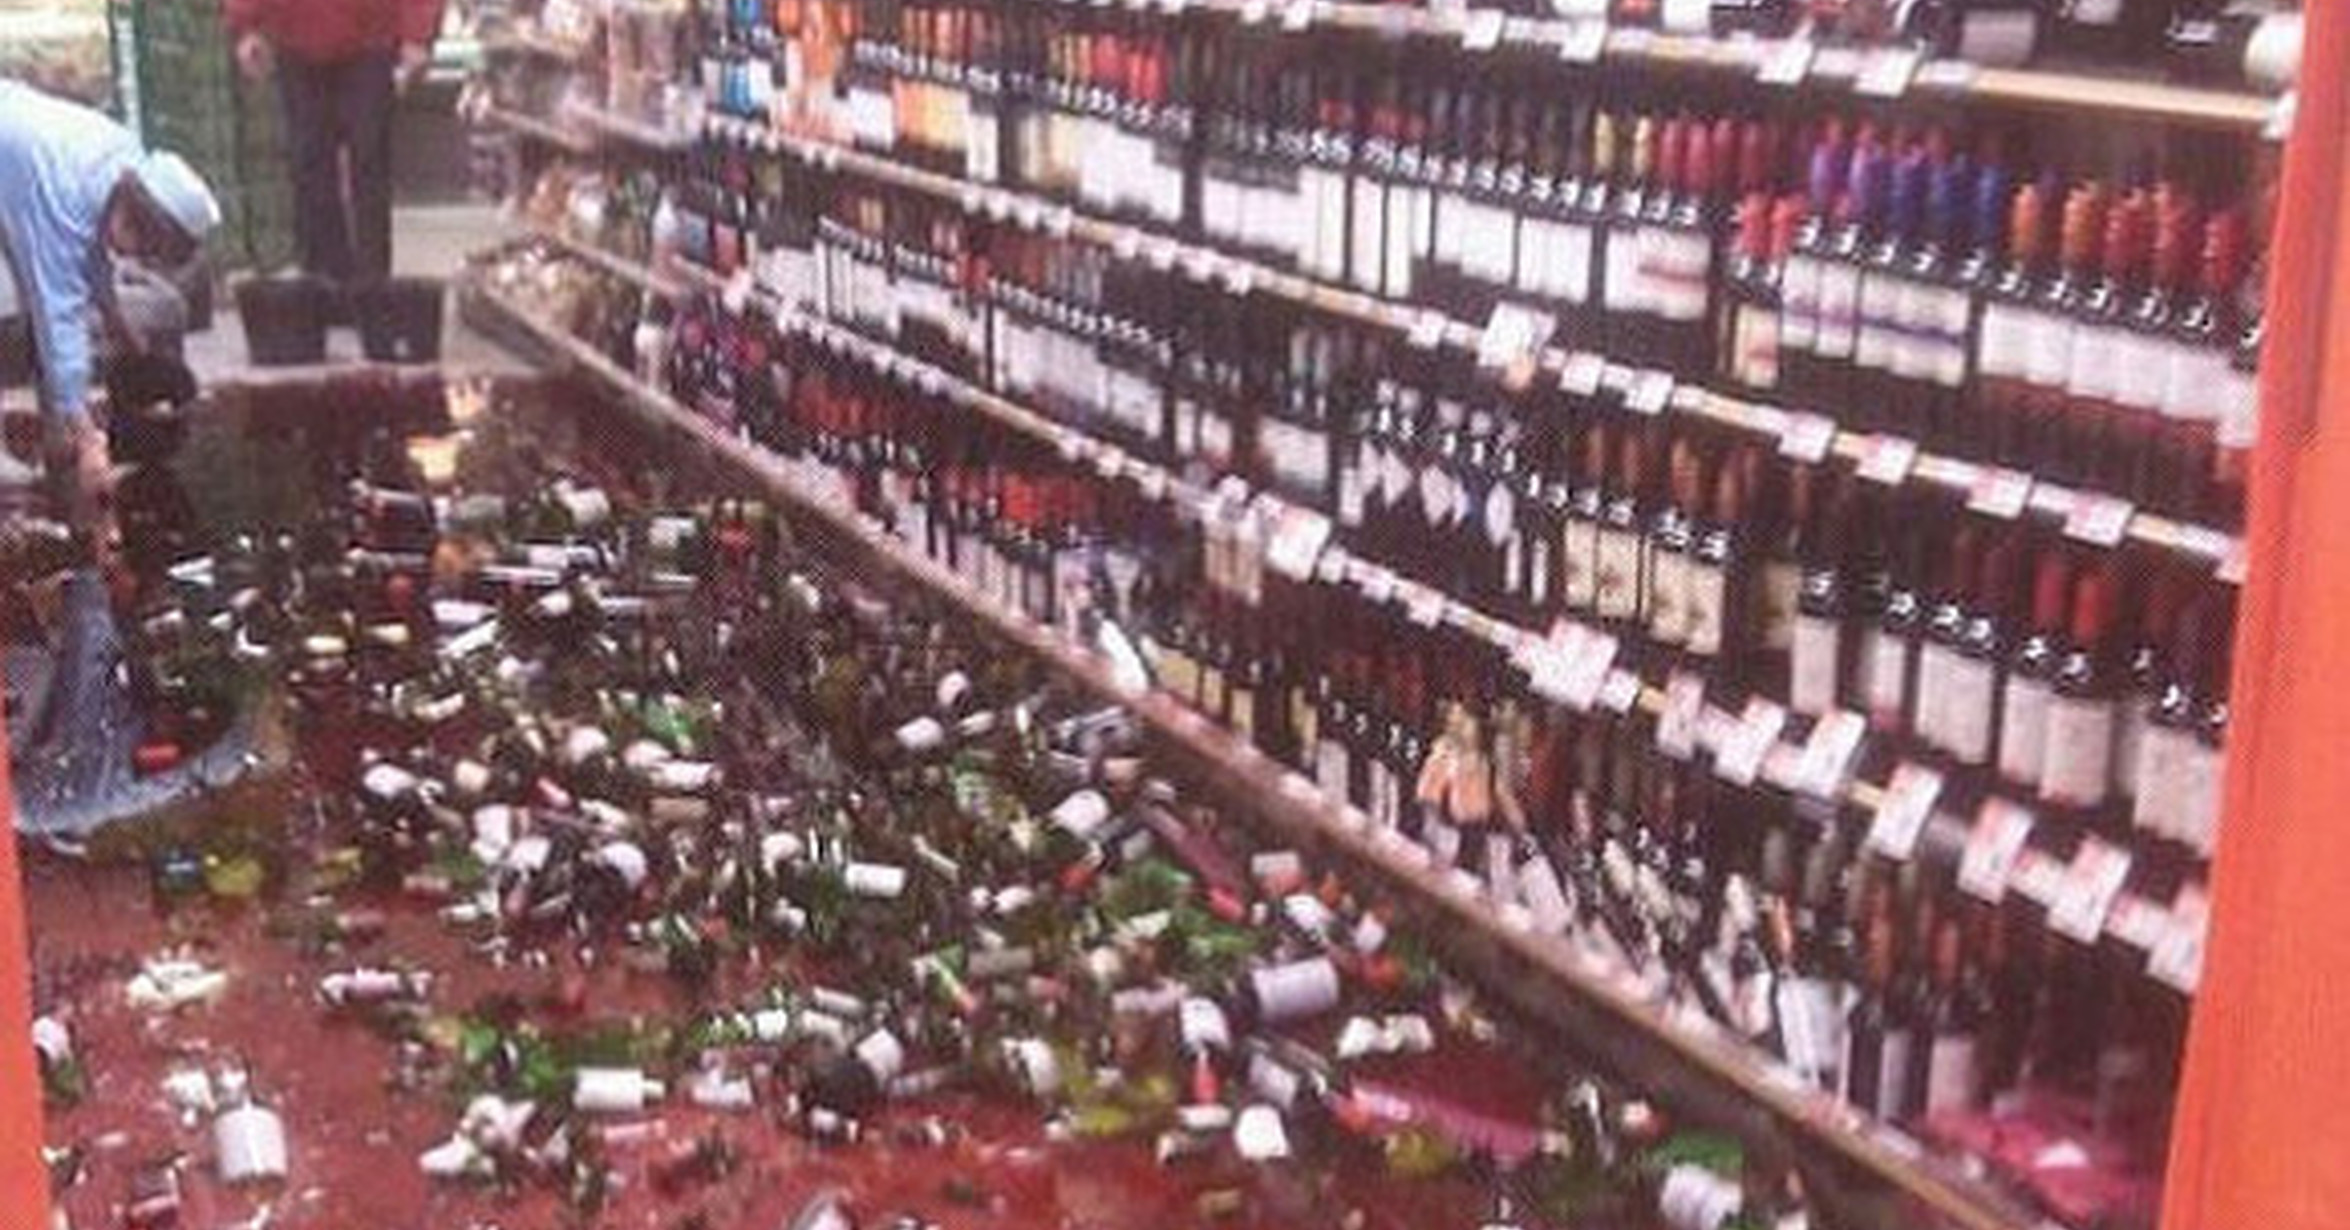 Разбитое вино. Разбитые бутылки в магазине. Разбитые бутылки вина в магазине.